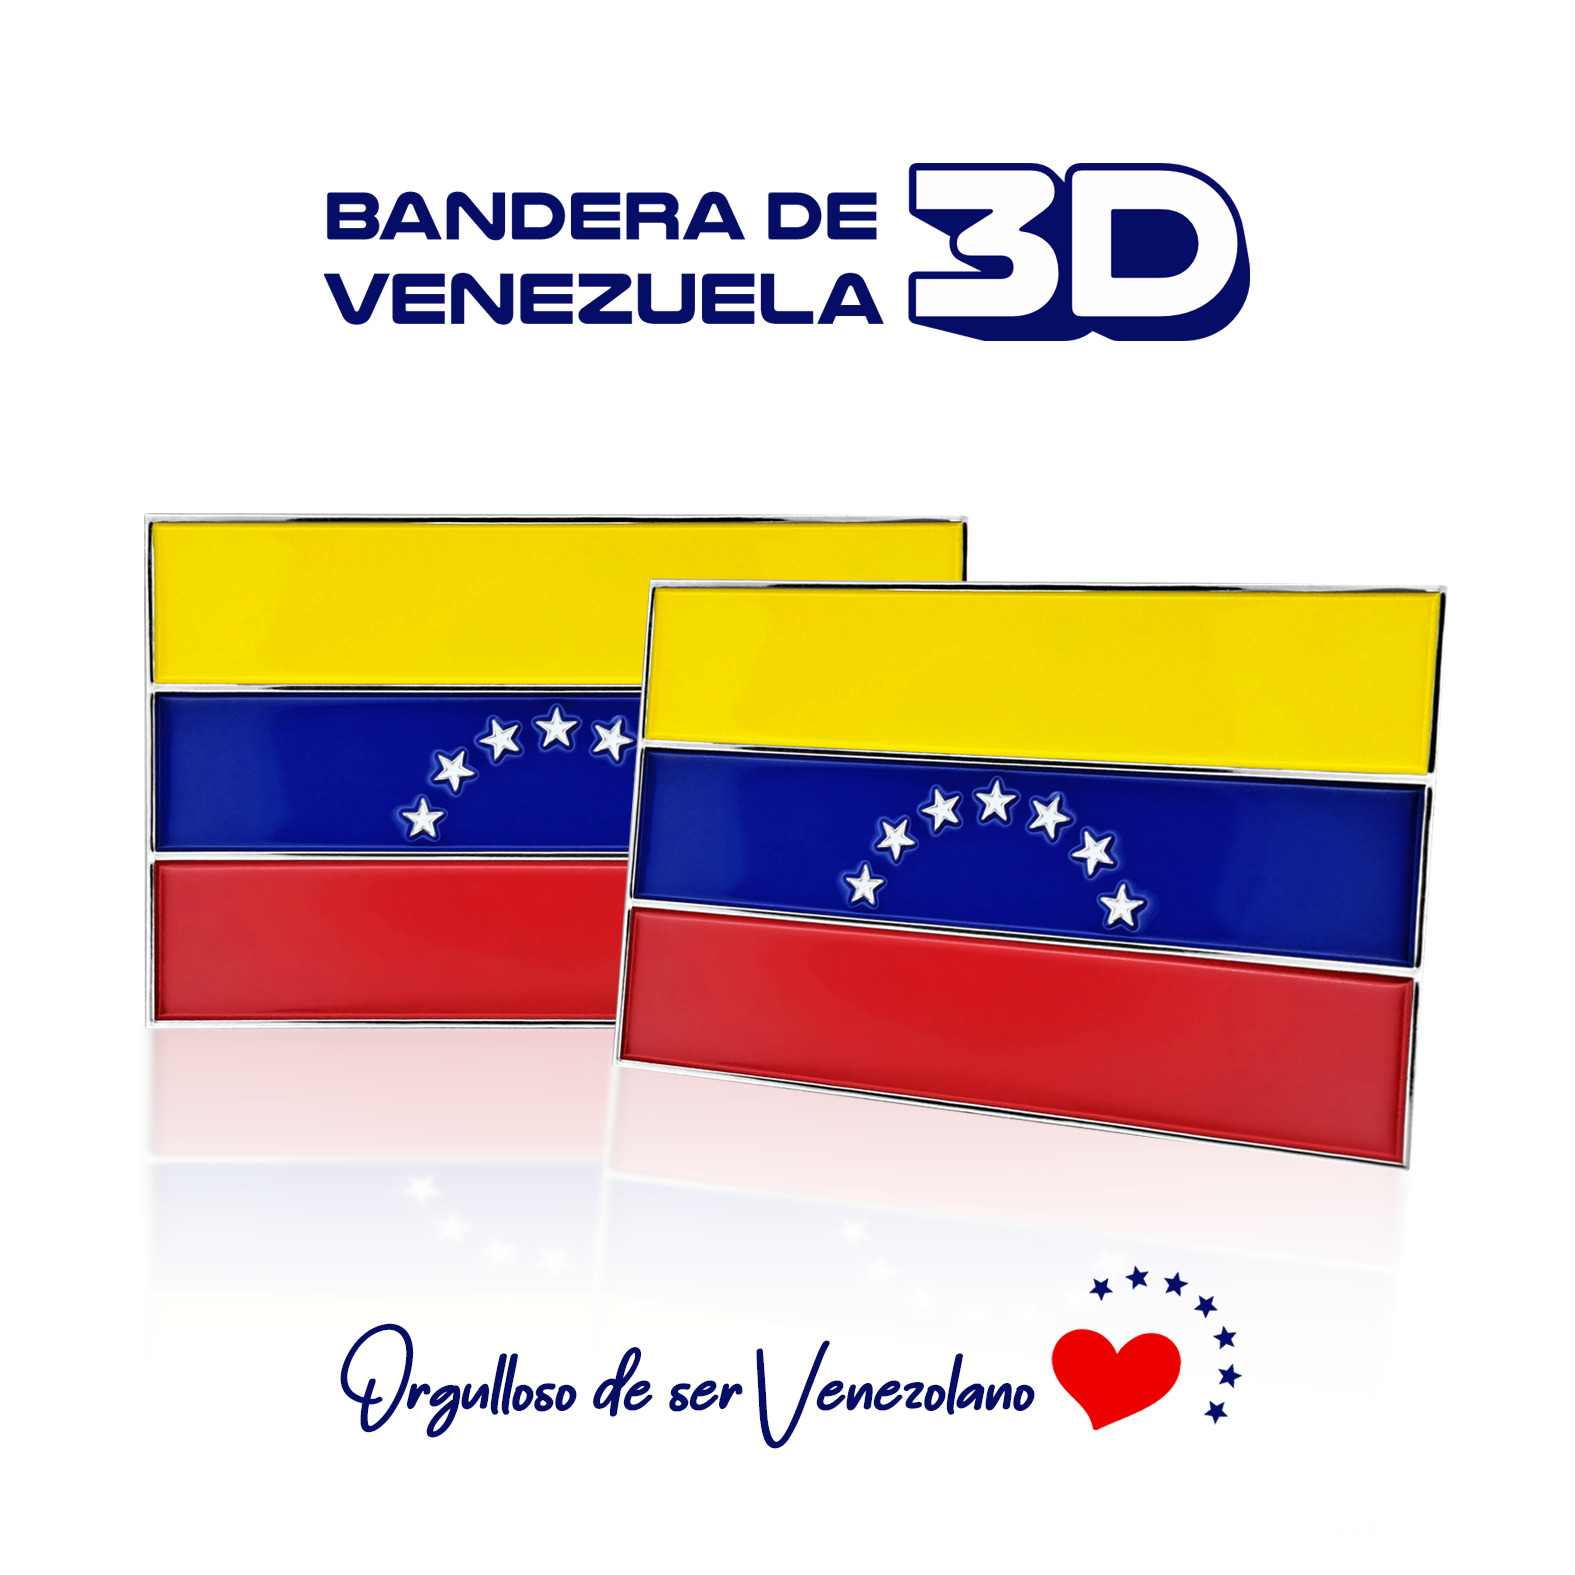 COMBO BANDERAS 3D DE VENEZUELA 7 ESTRELLA - ADHESIVA + MAGNETICA